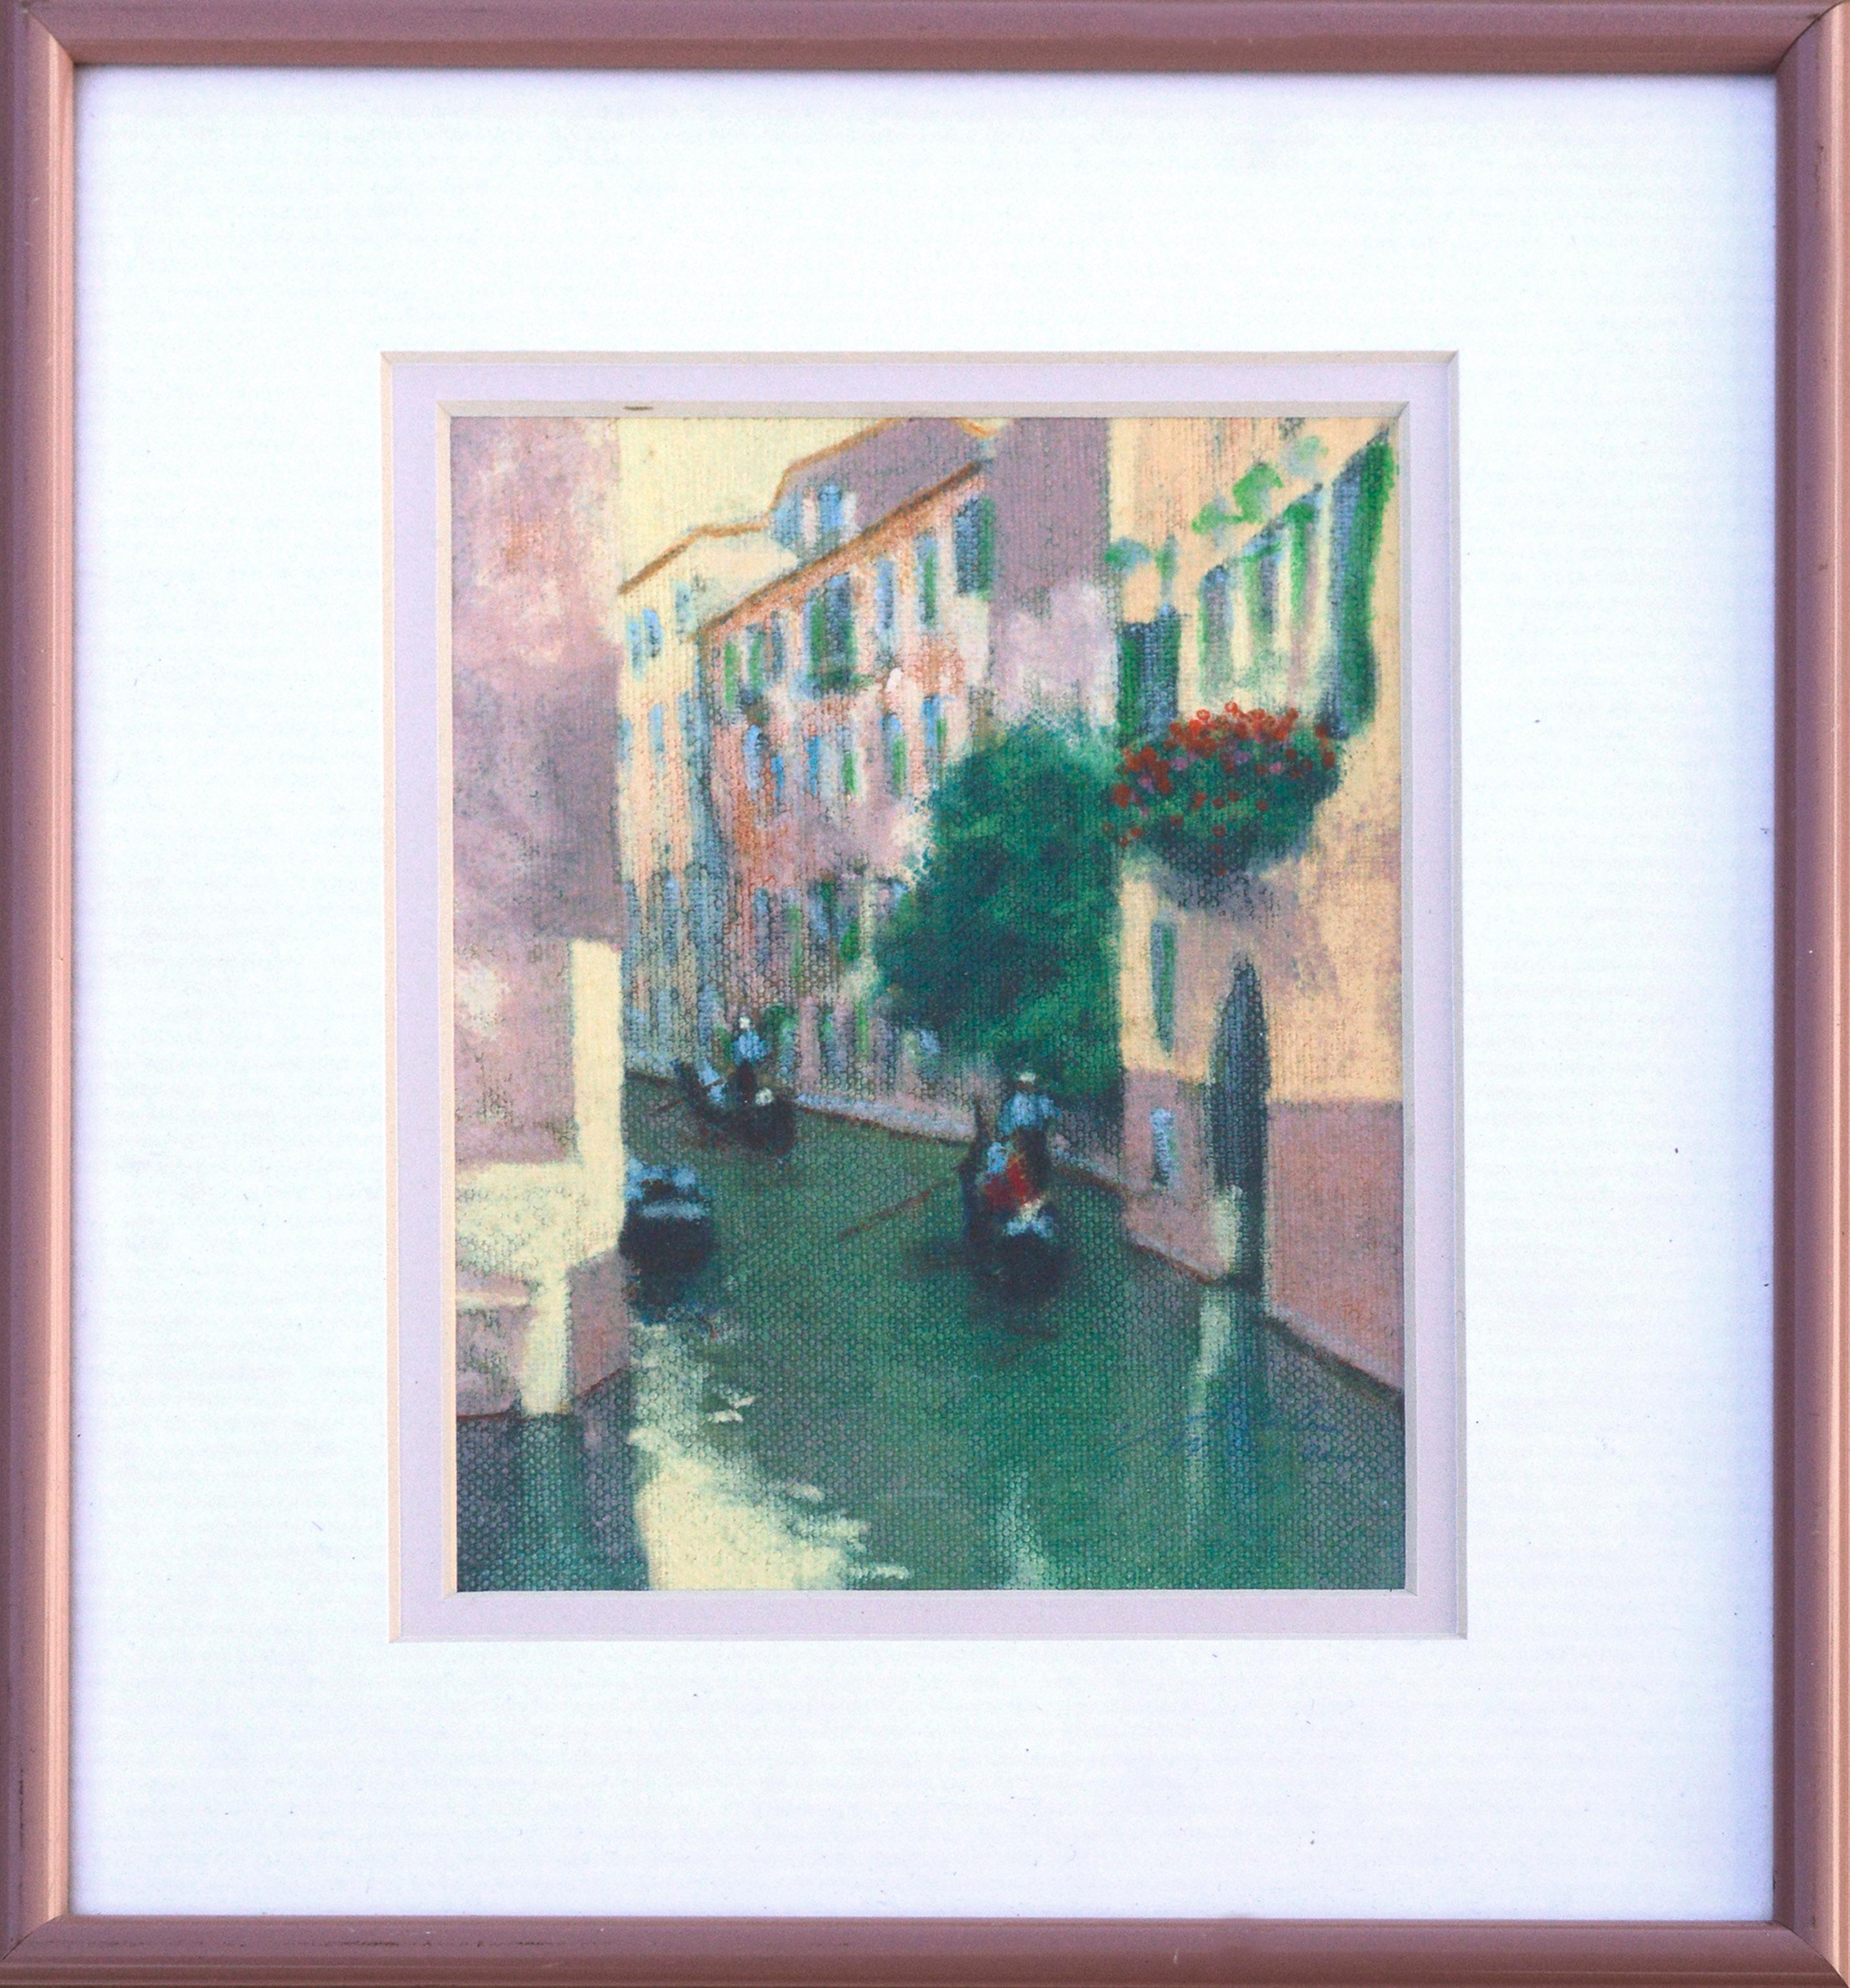 Canal with Gondolas - Venedig, Italien, figurative Landschaft  – Painting von Unknown